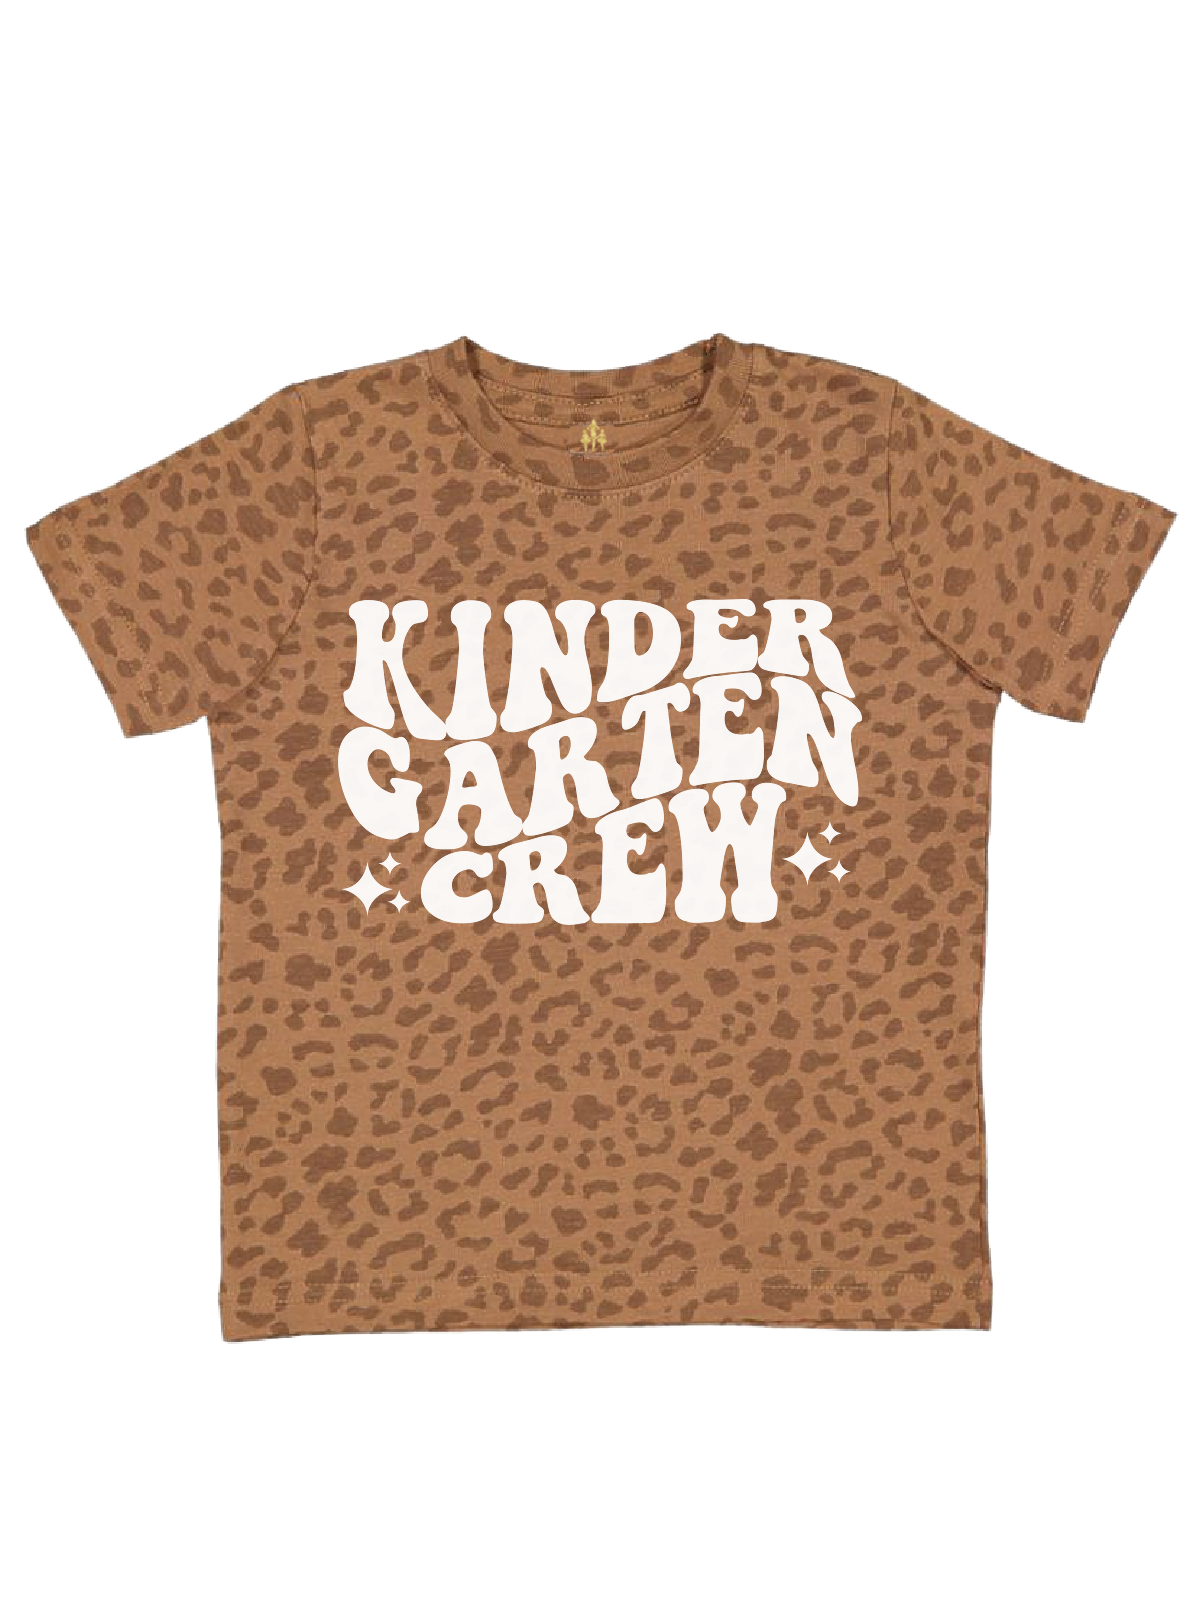 Kindergarten Crew Kids Back to School Shirts